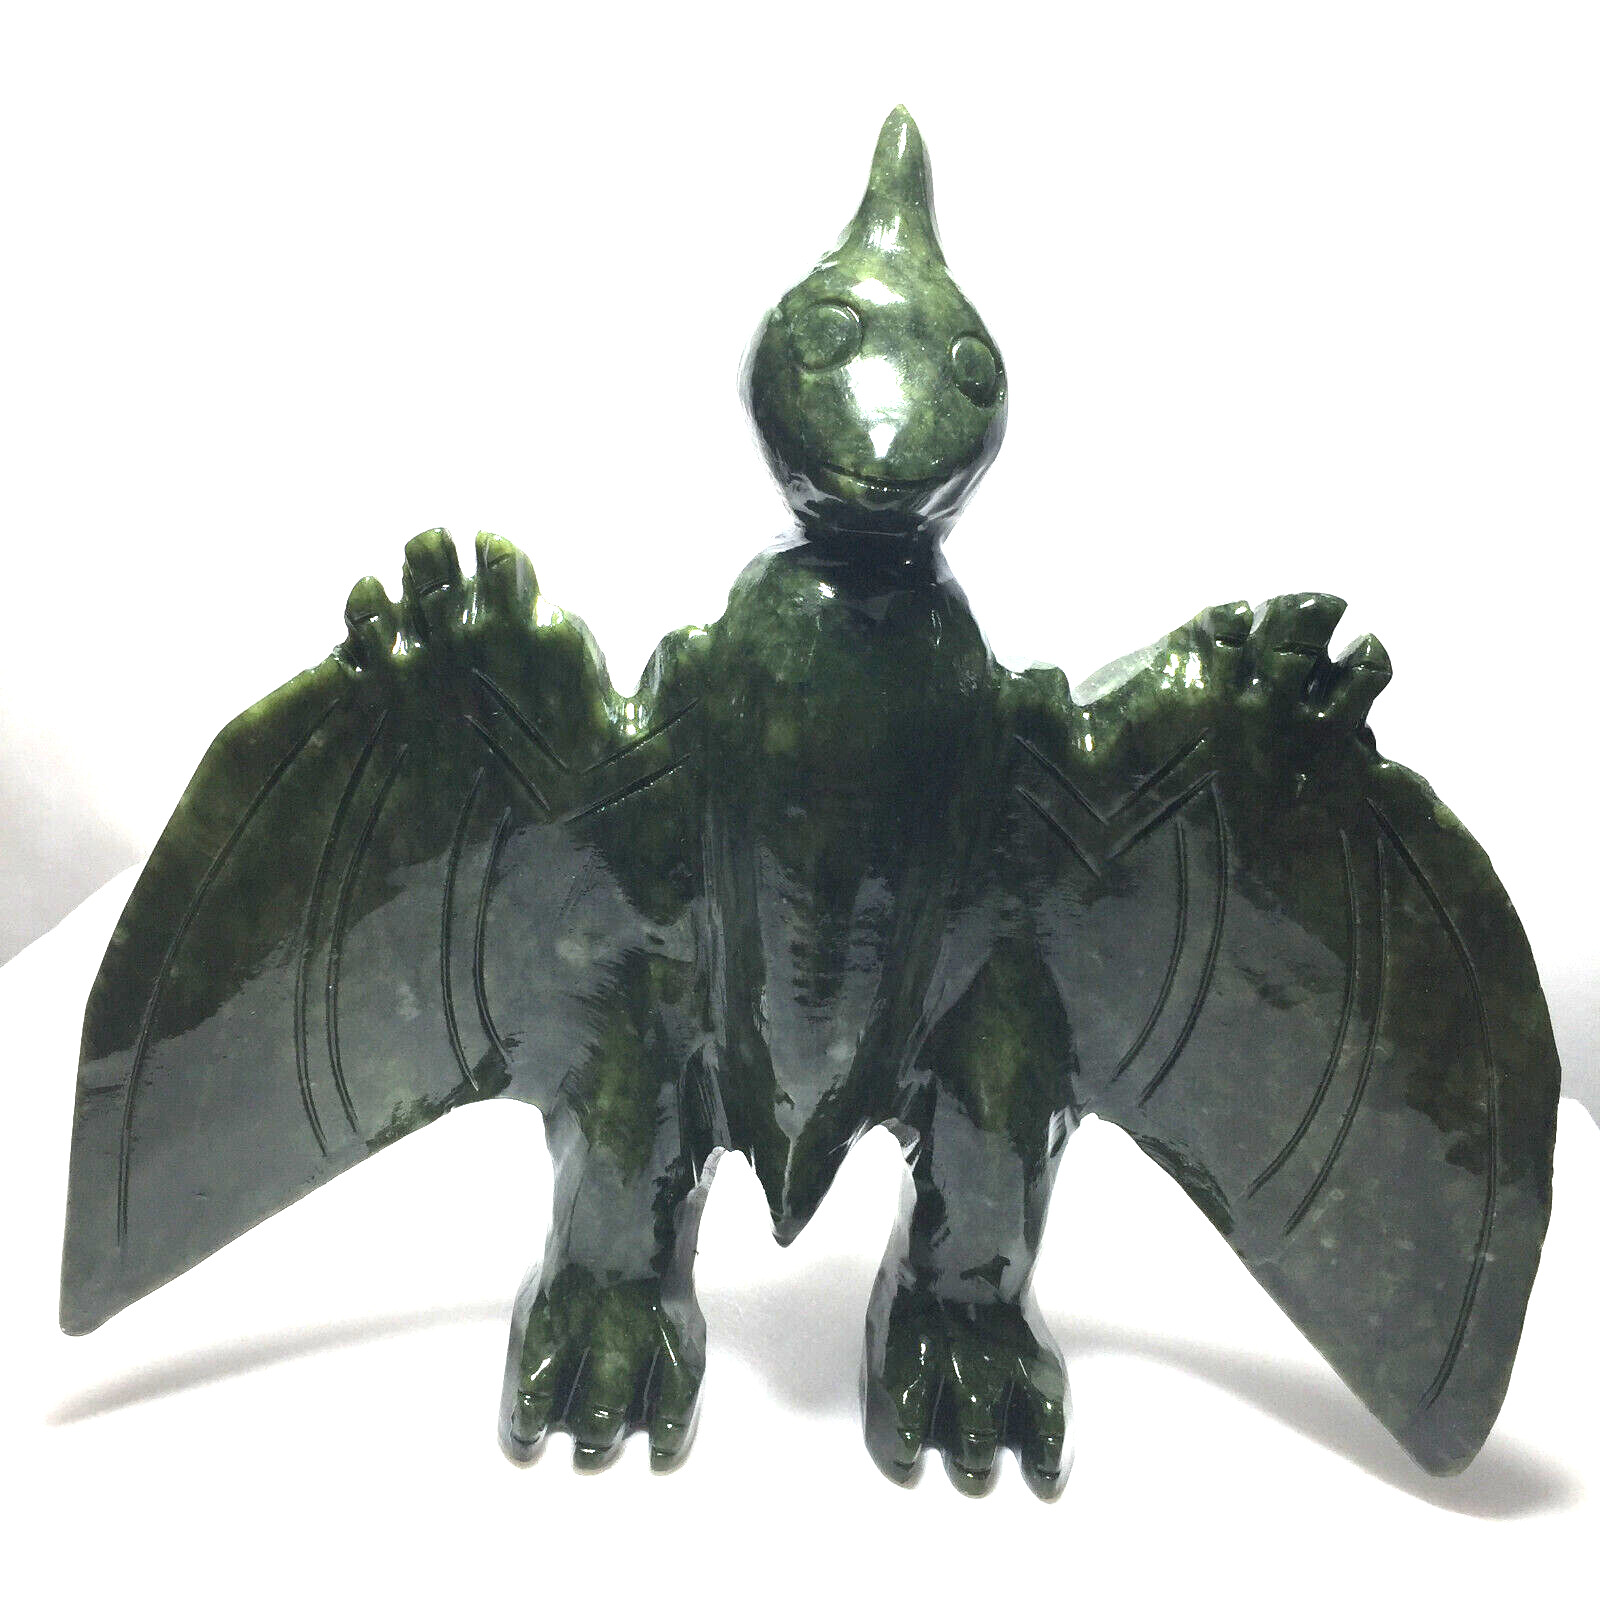 900g Natural Jasper Carved bat Specimen Quartz Crystal Decorate collection gifts